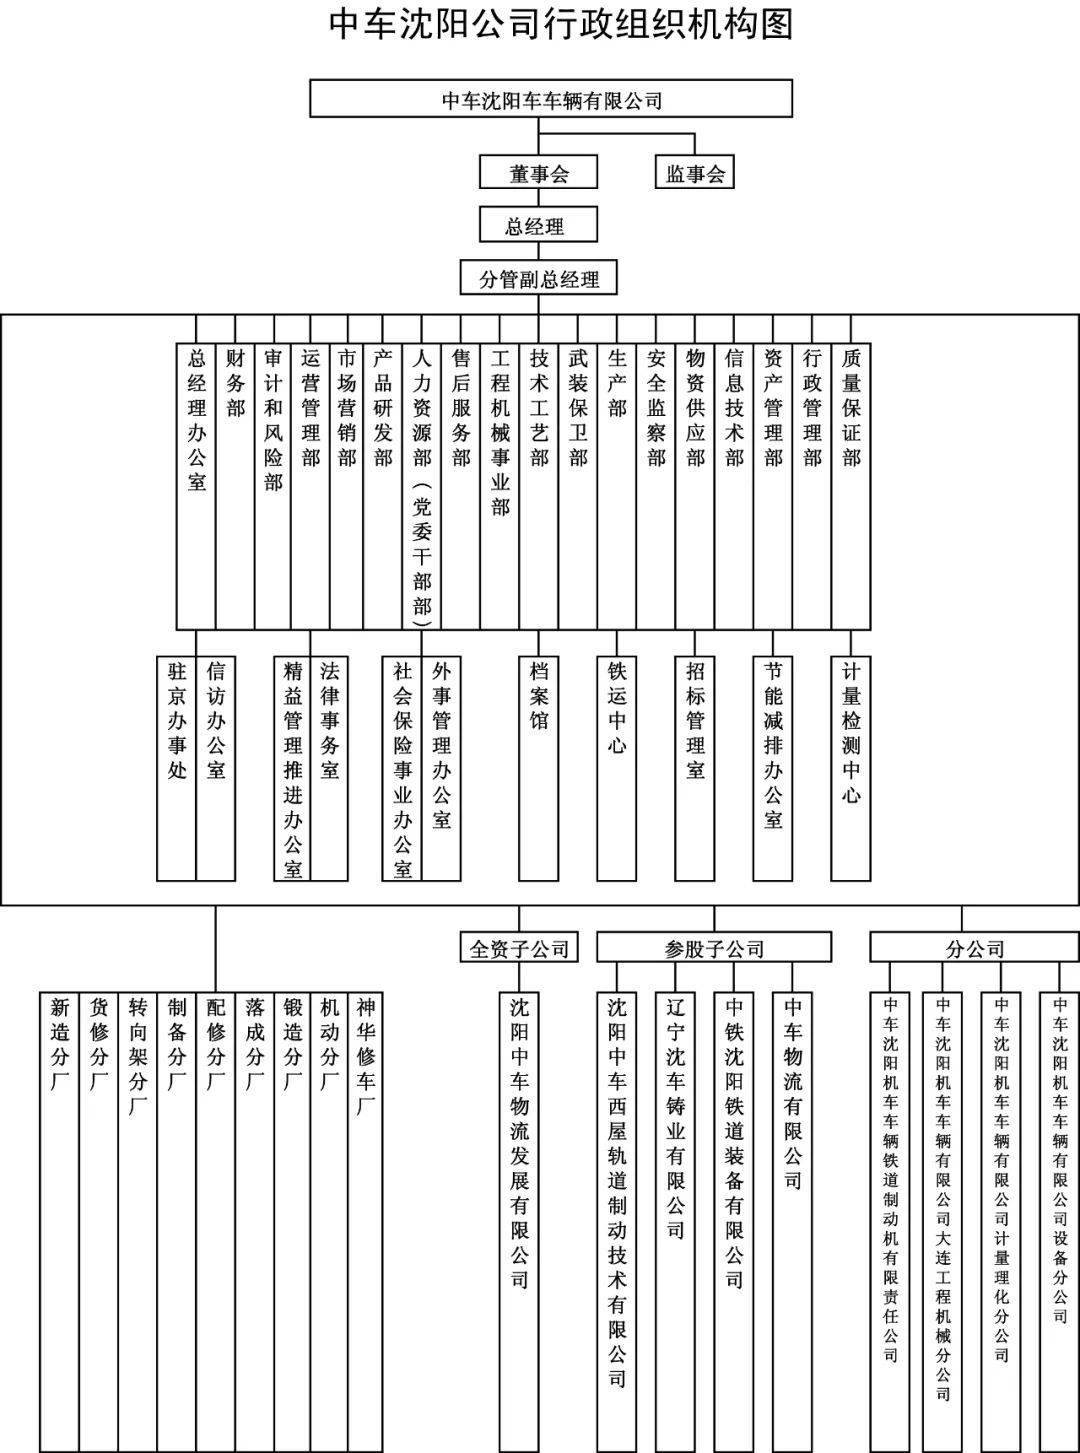 芒果体育官网手机APP下载华夏中车最全46家子公司构造架构图(图4)